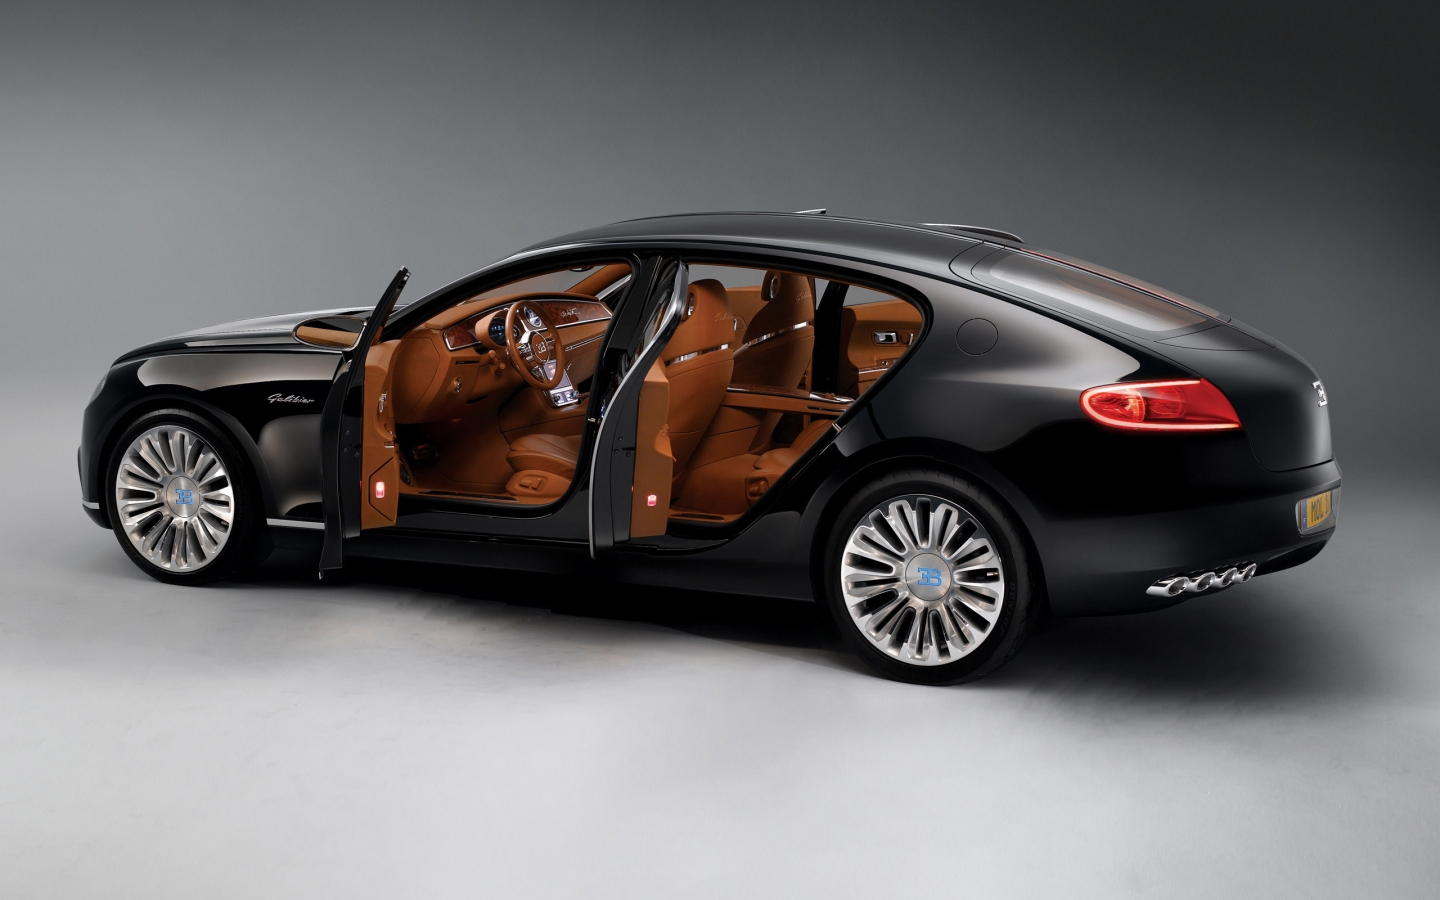 Bugatti 16C Galibier Concept for 1440 x 900 widescreen resolution